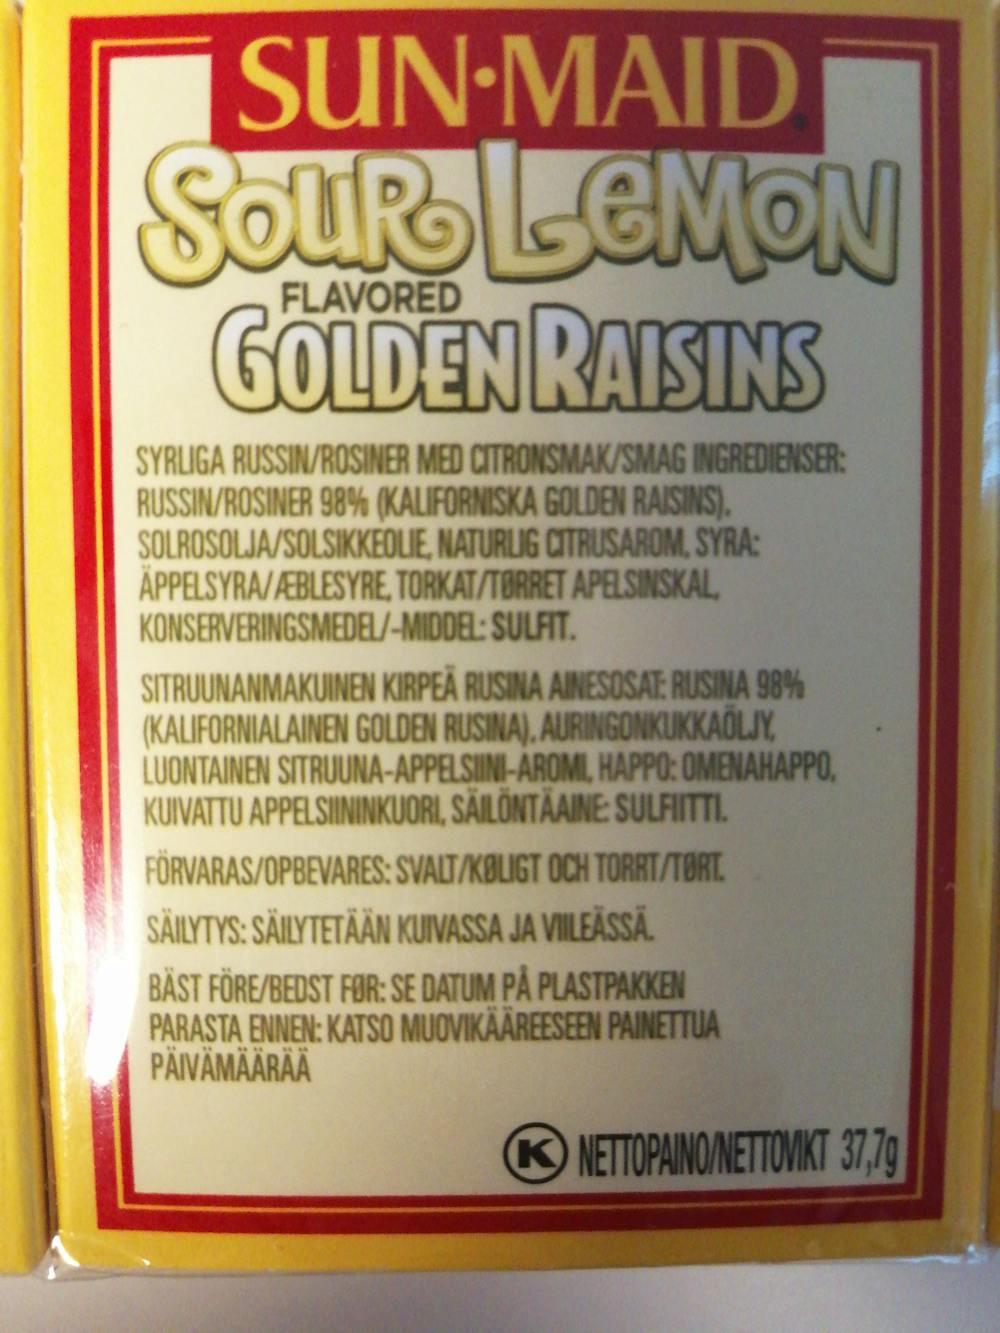 Ingredienslisten til Sunmaid Sour lemon golden raisins